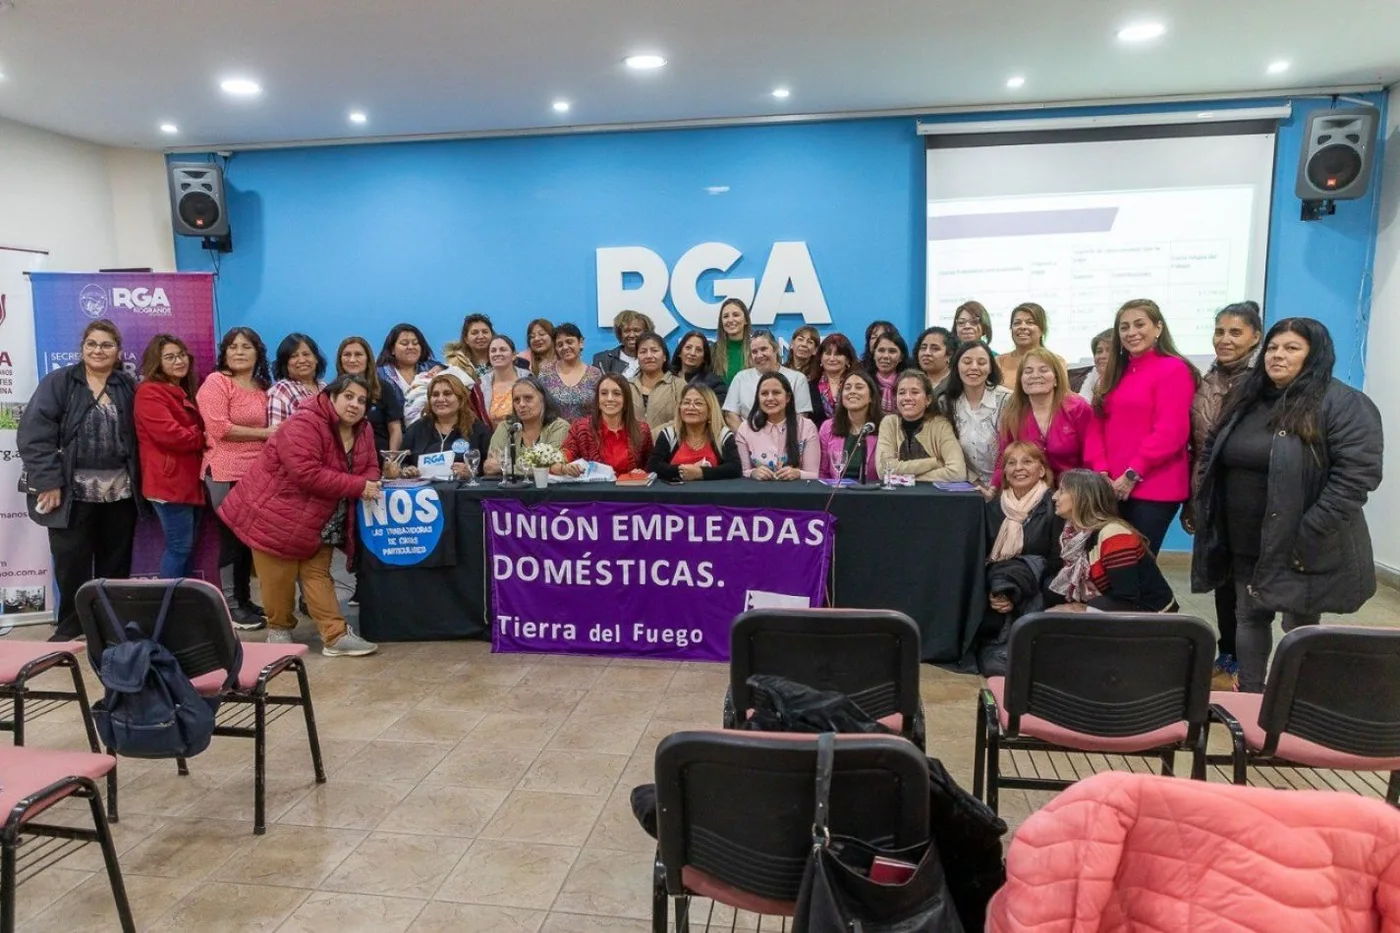 La actividad fue impulsada por la Secretaría de la Mujer, Género y Diversidad en cooperación con la Unión de Empleadas Domésticas de Río Grande.